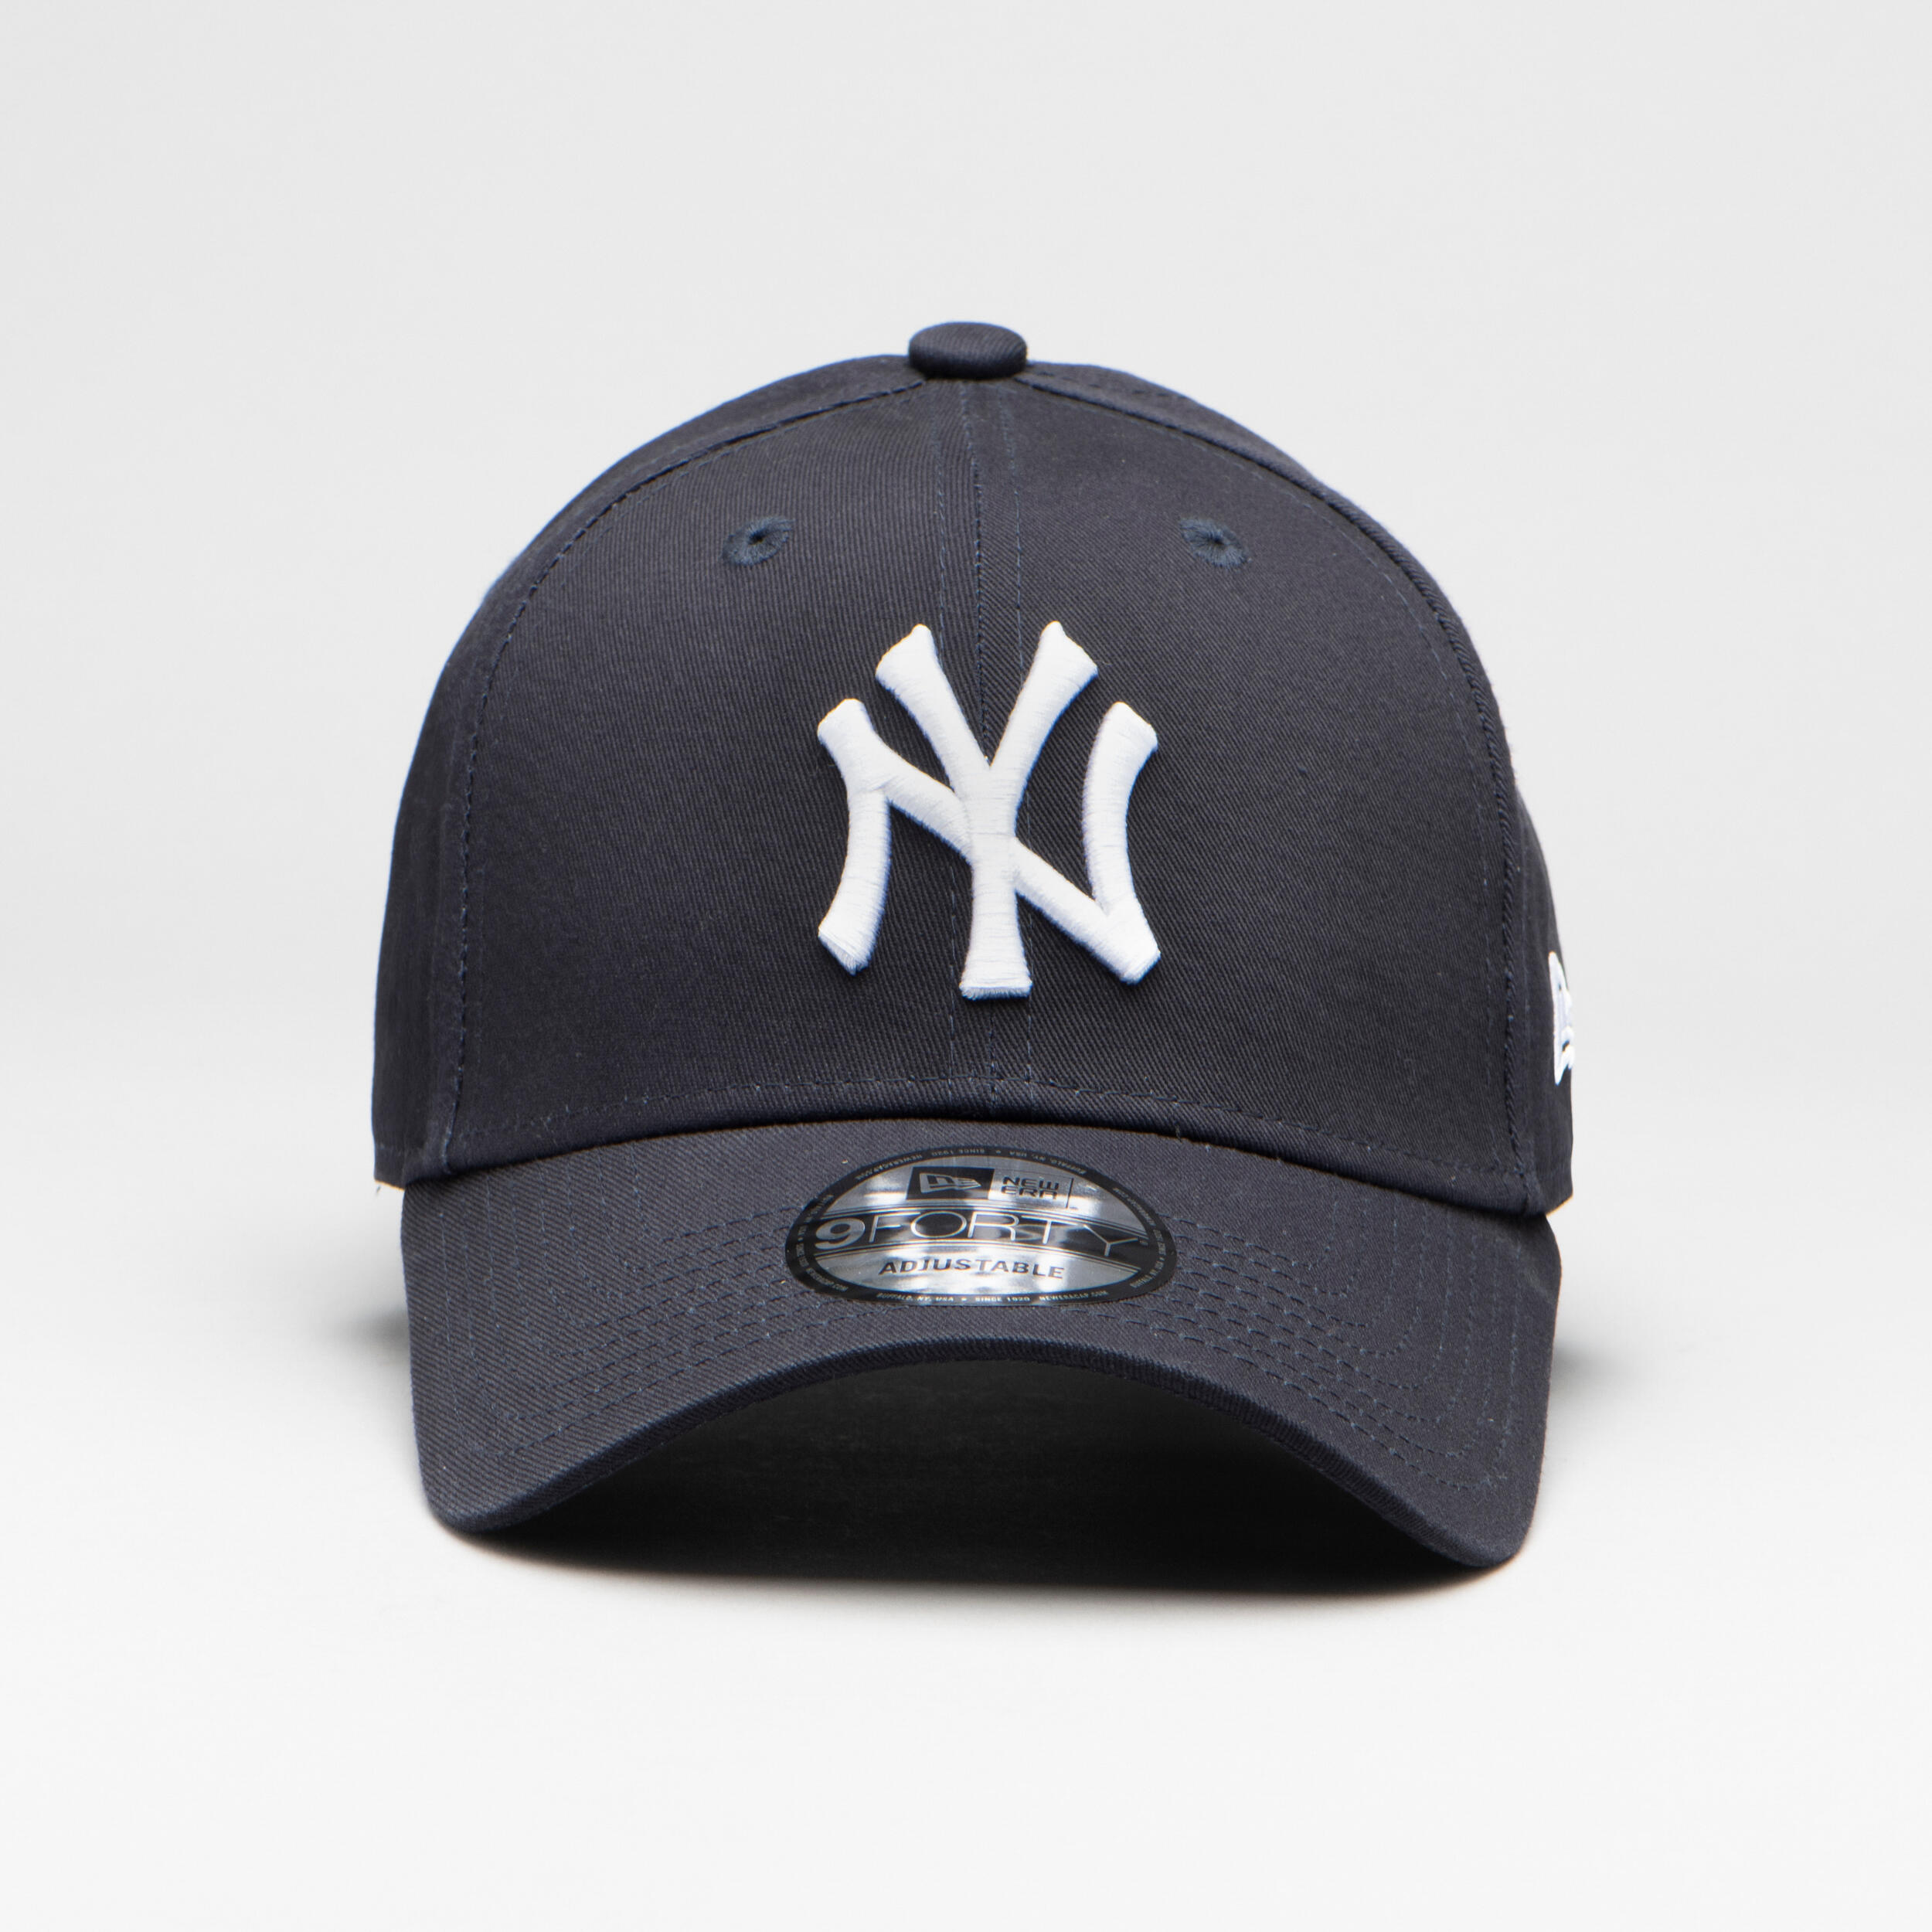 Perla artificiale Baseball Cap Cappello in pelle Baseball Black Caps Moda Casual Cappelli eleganti Accessori Cappelli e berretti Berretti da baseball 